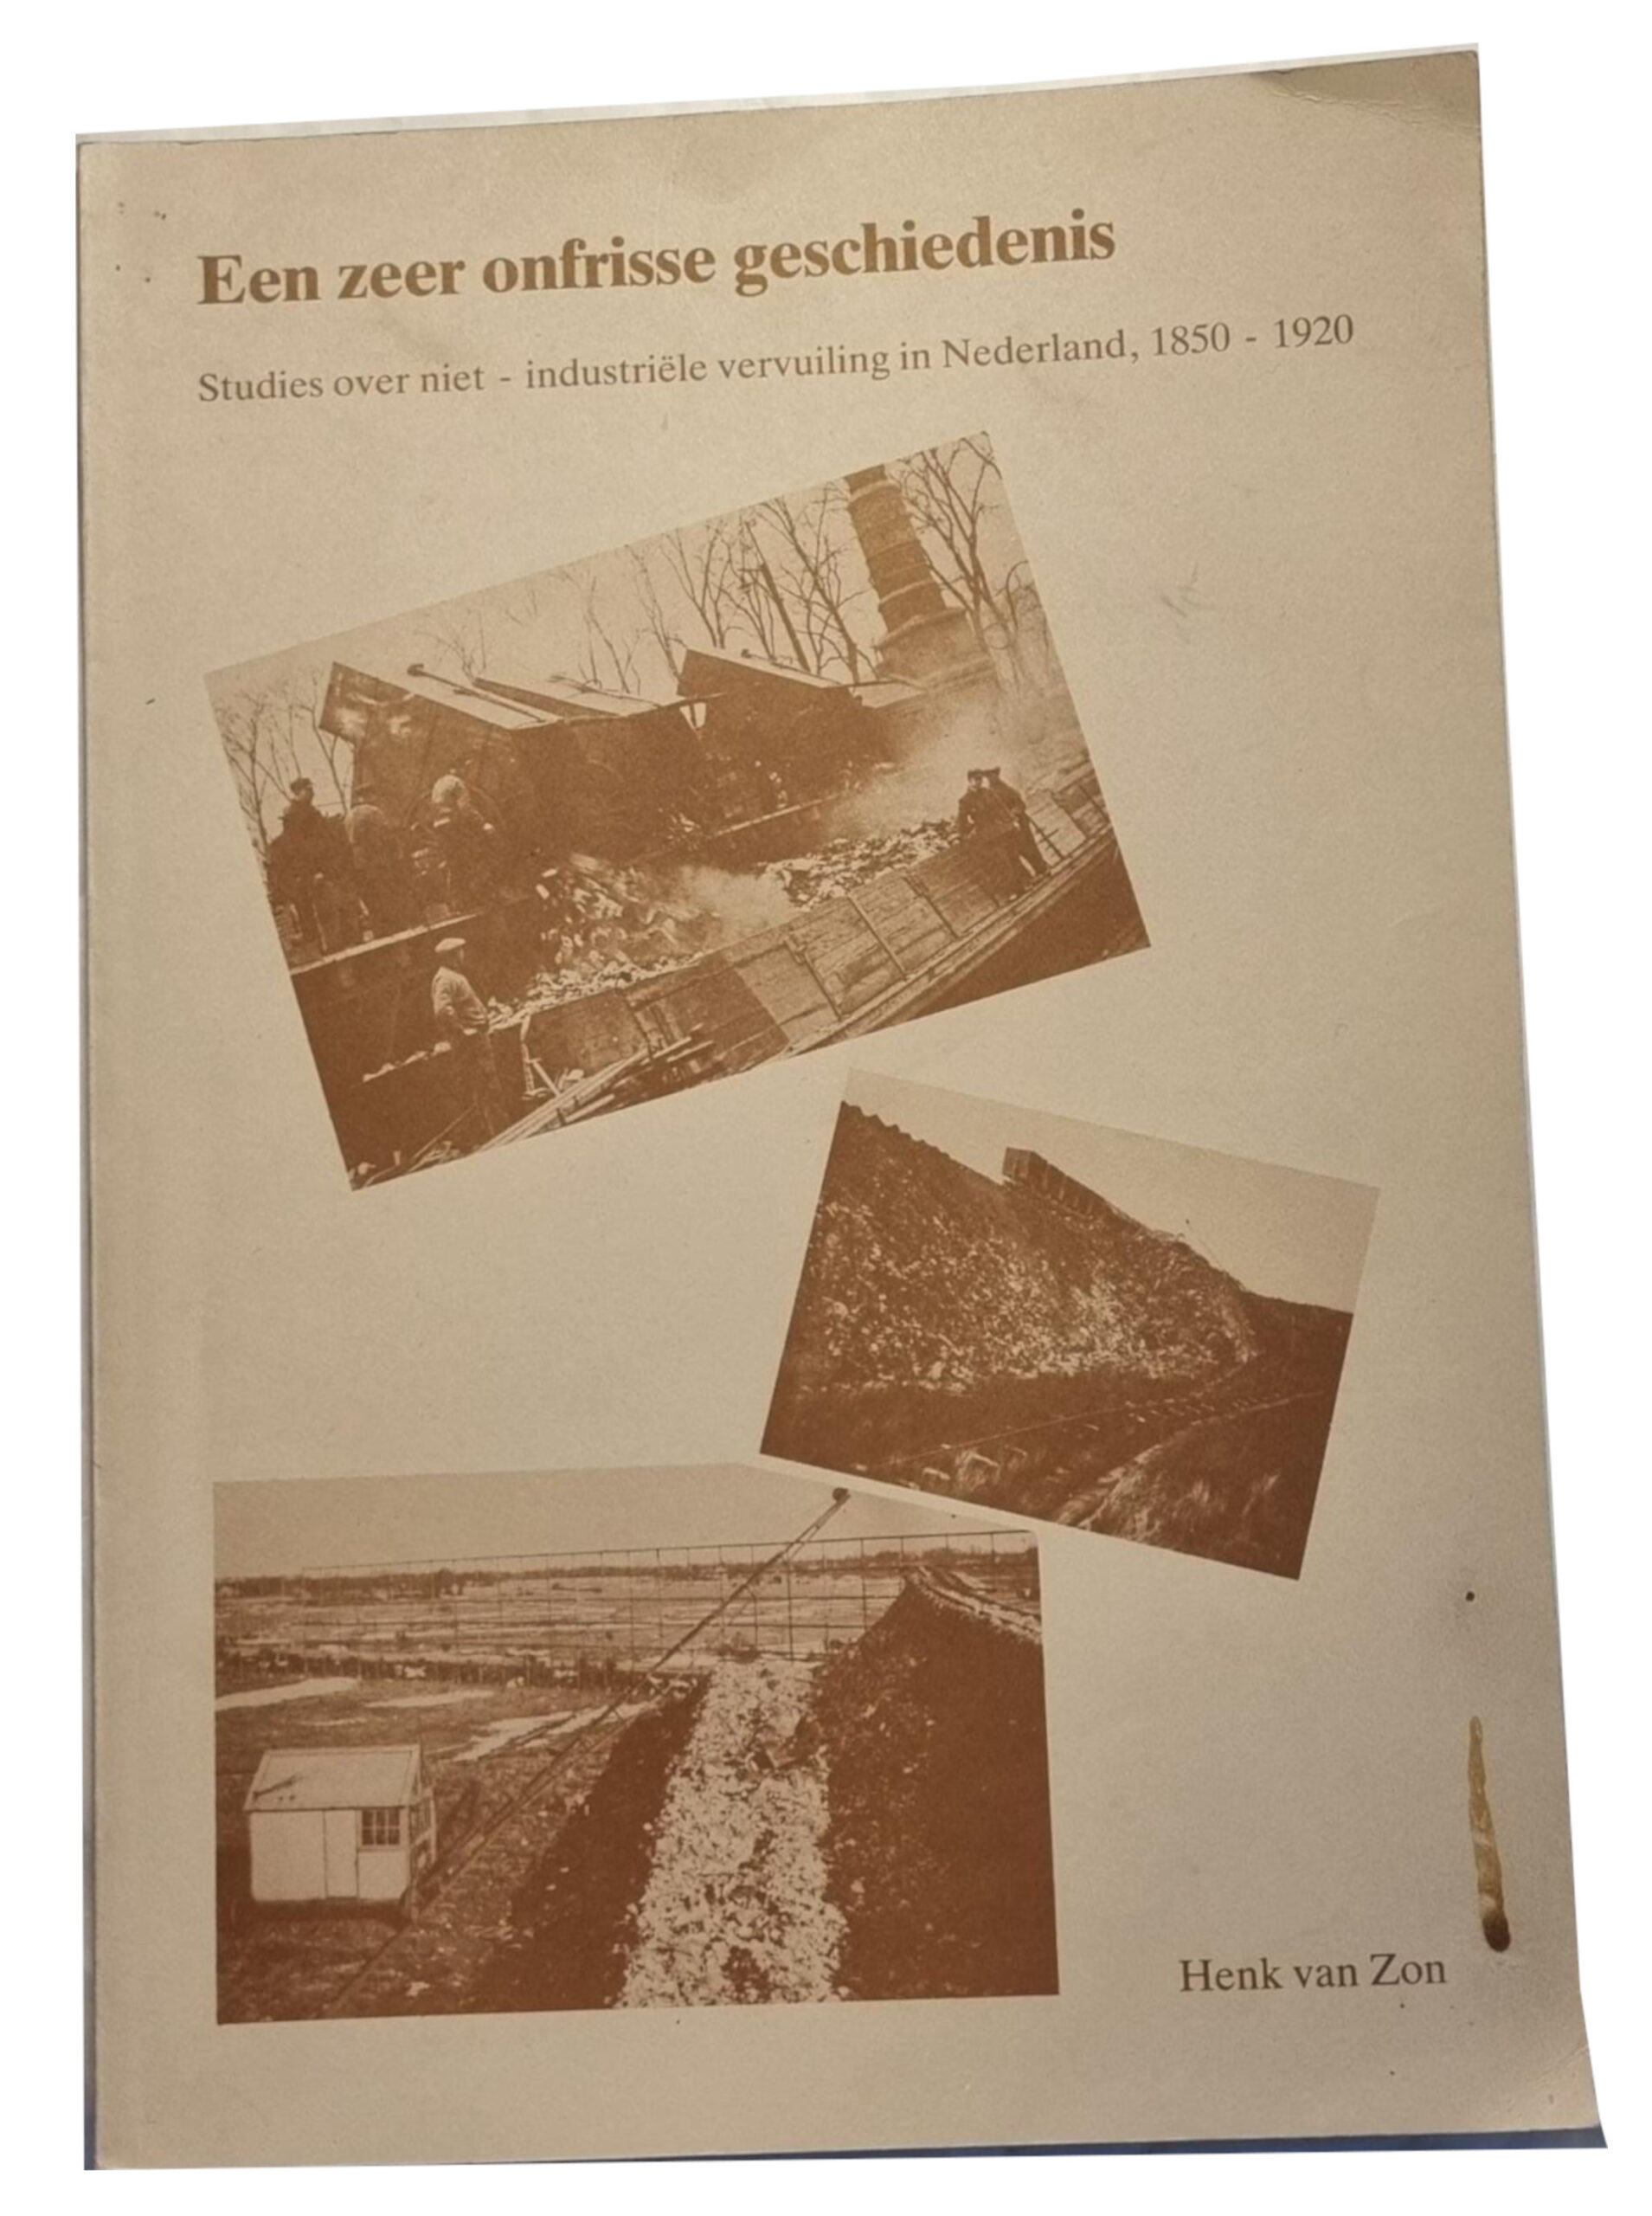 Een zeer onfrisse geschiedenis. Studies over de niet-industriele vervuiling in Nederland 1850-1920 Groningen 1986